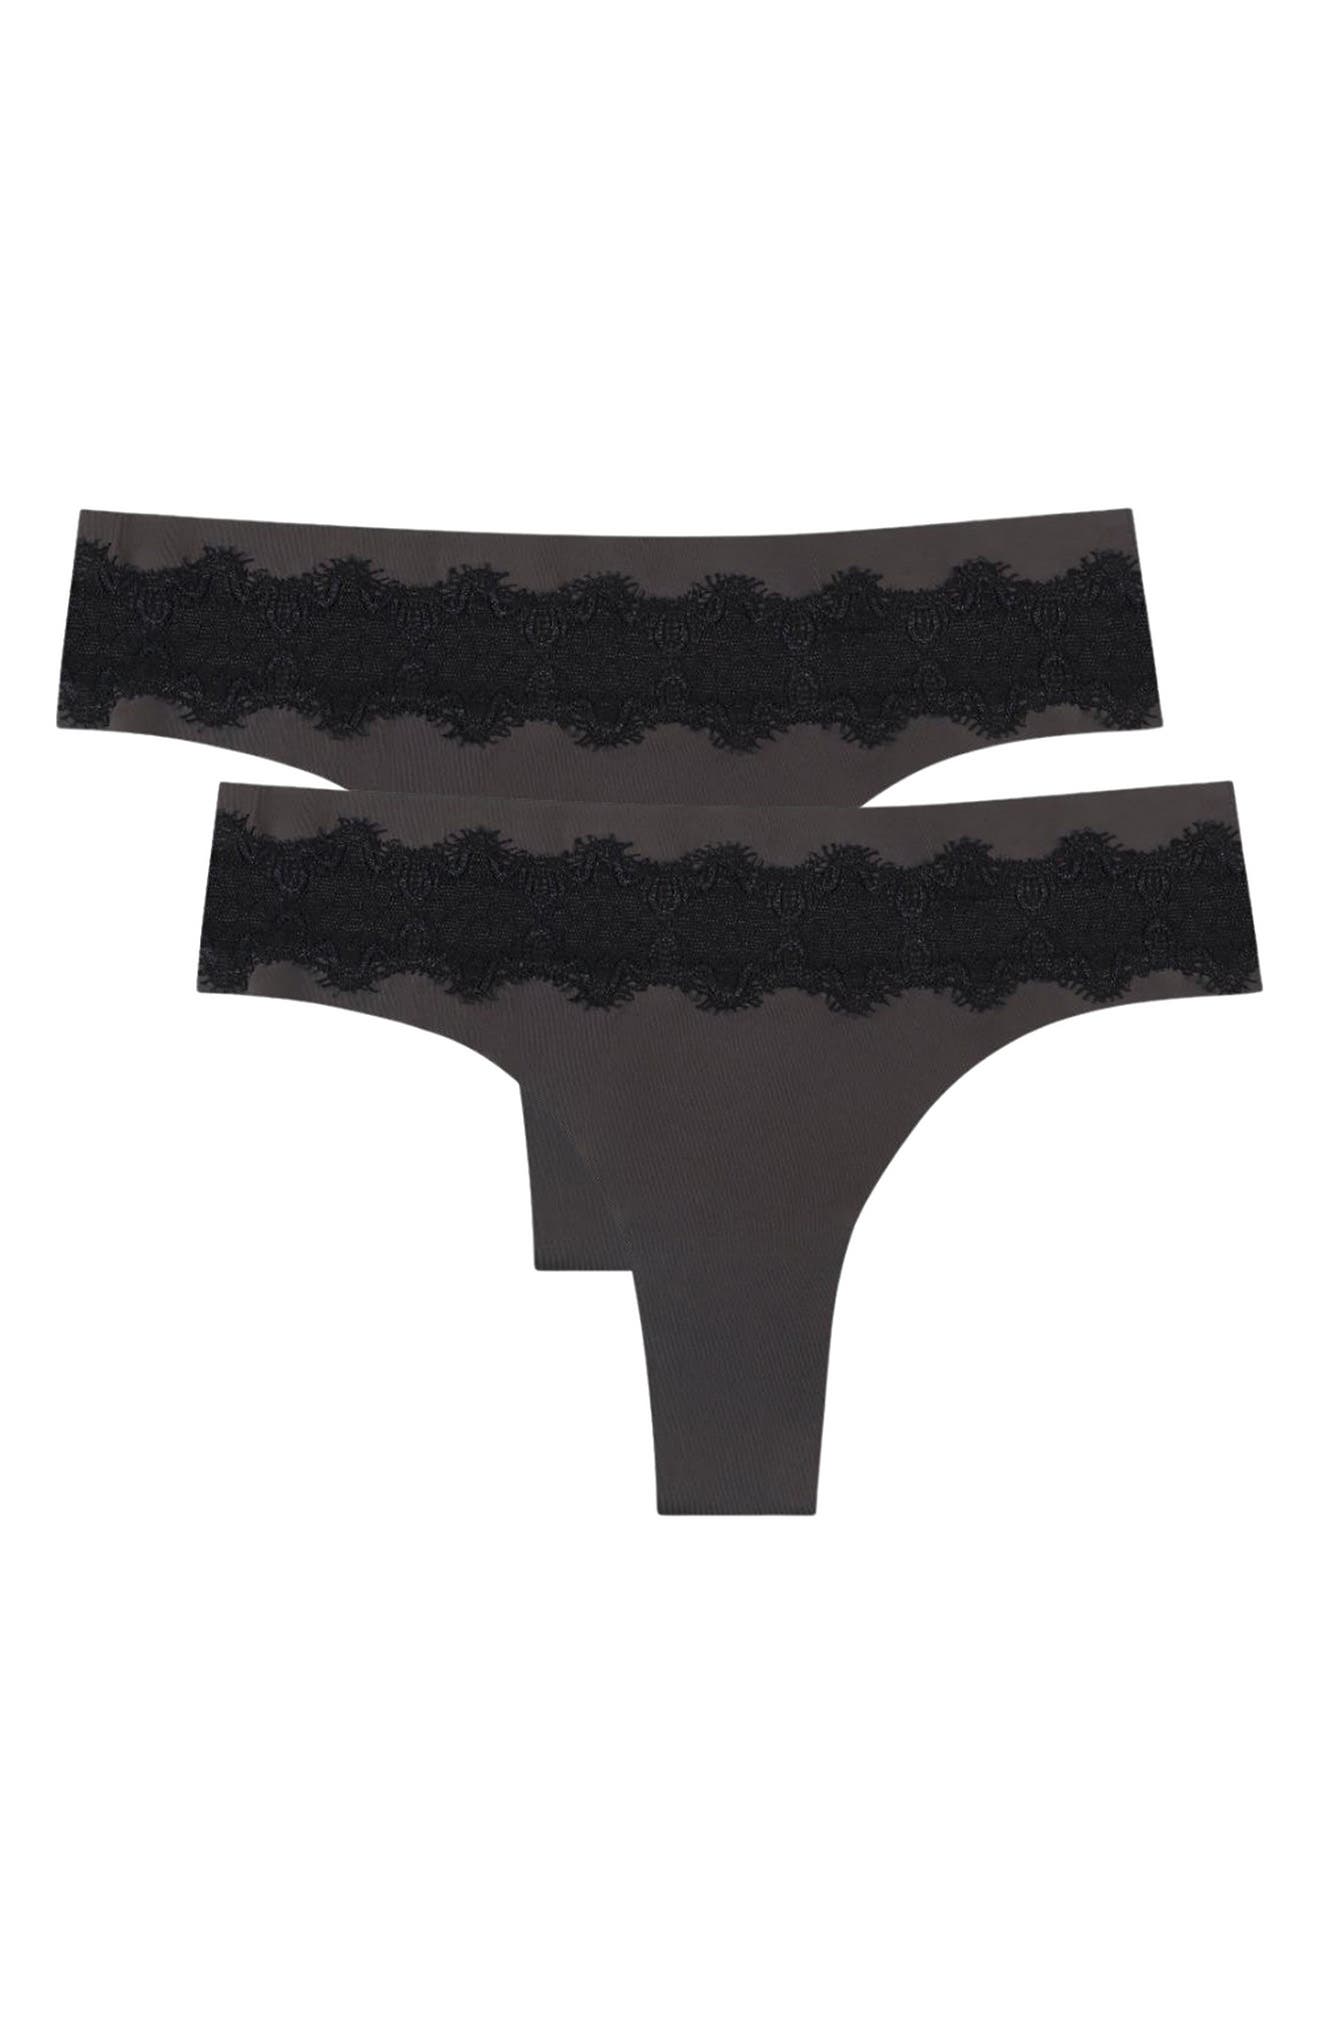 Andrew Scott Mens 18 Pack Hot Tanga Athletic Sport Bikini Underwear